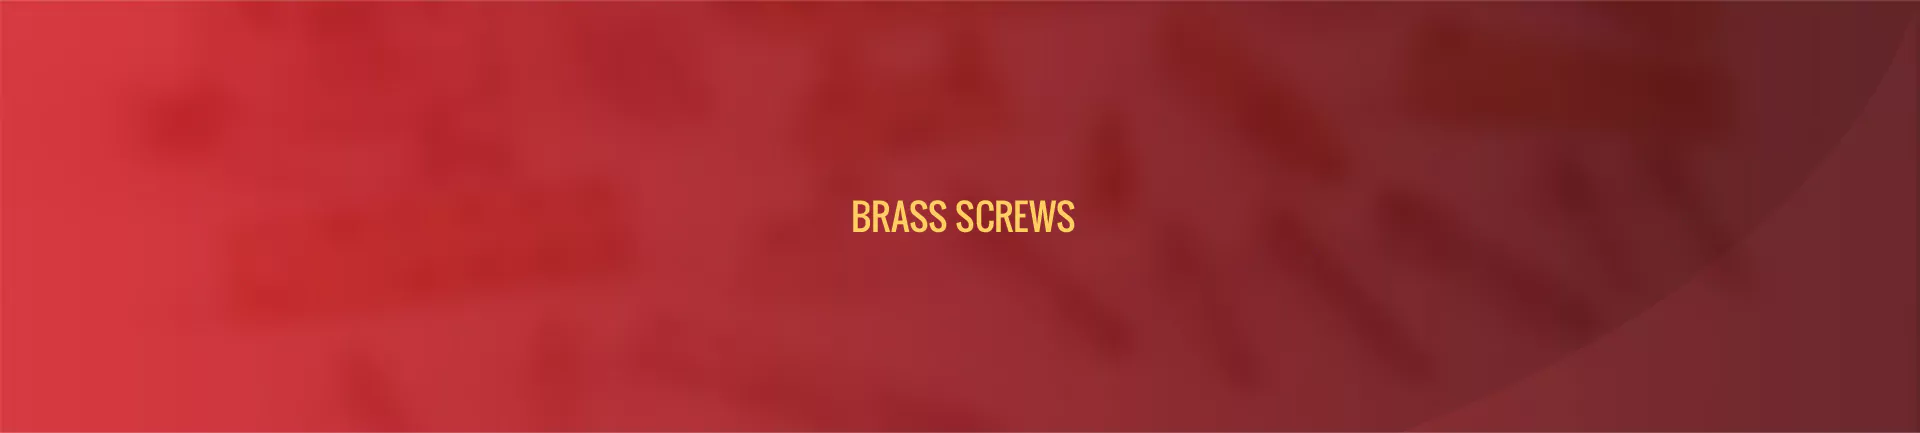 brass-fasteners-screws-banner